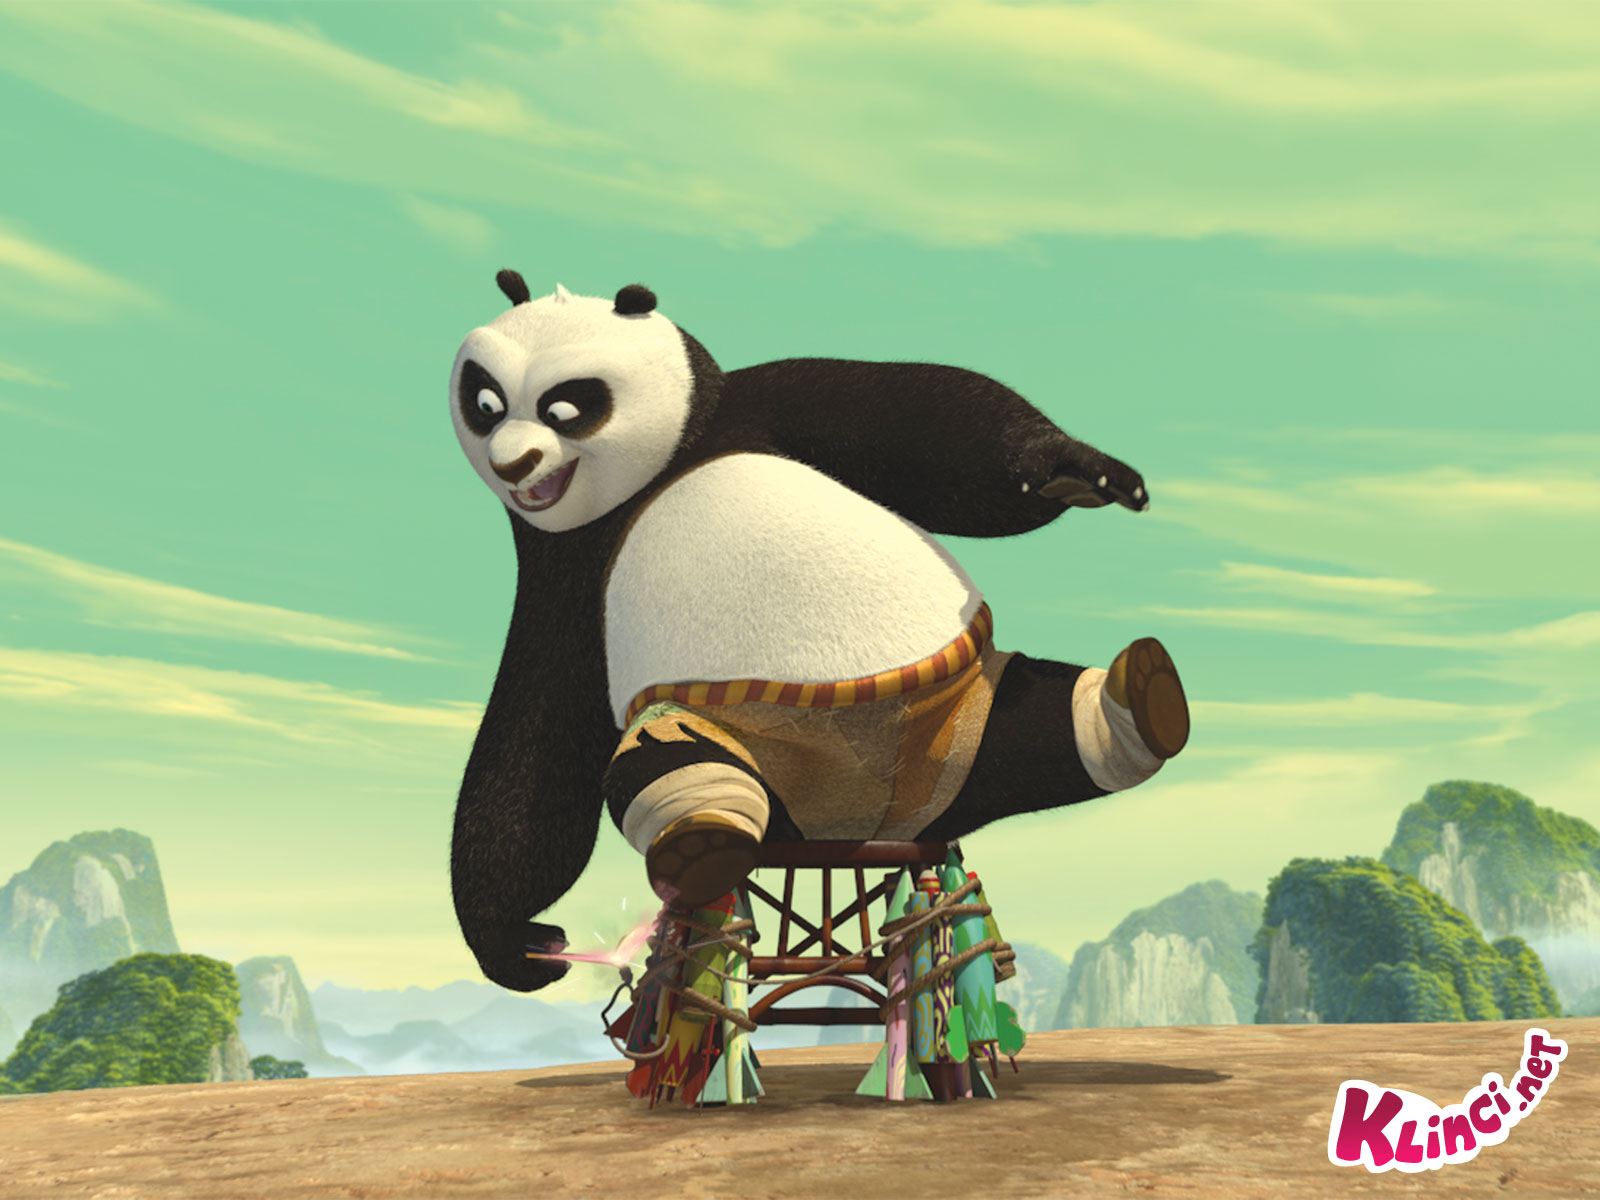 Kumpulan Wallpaper Kungfu Panda